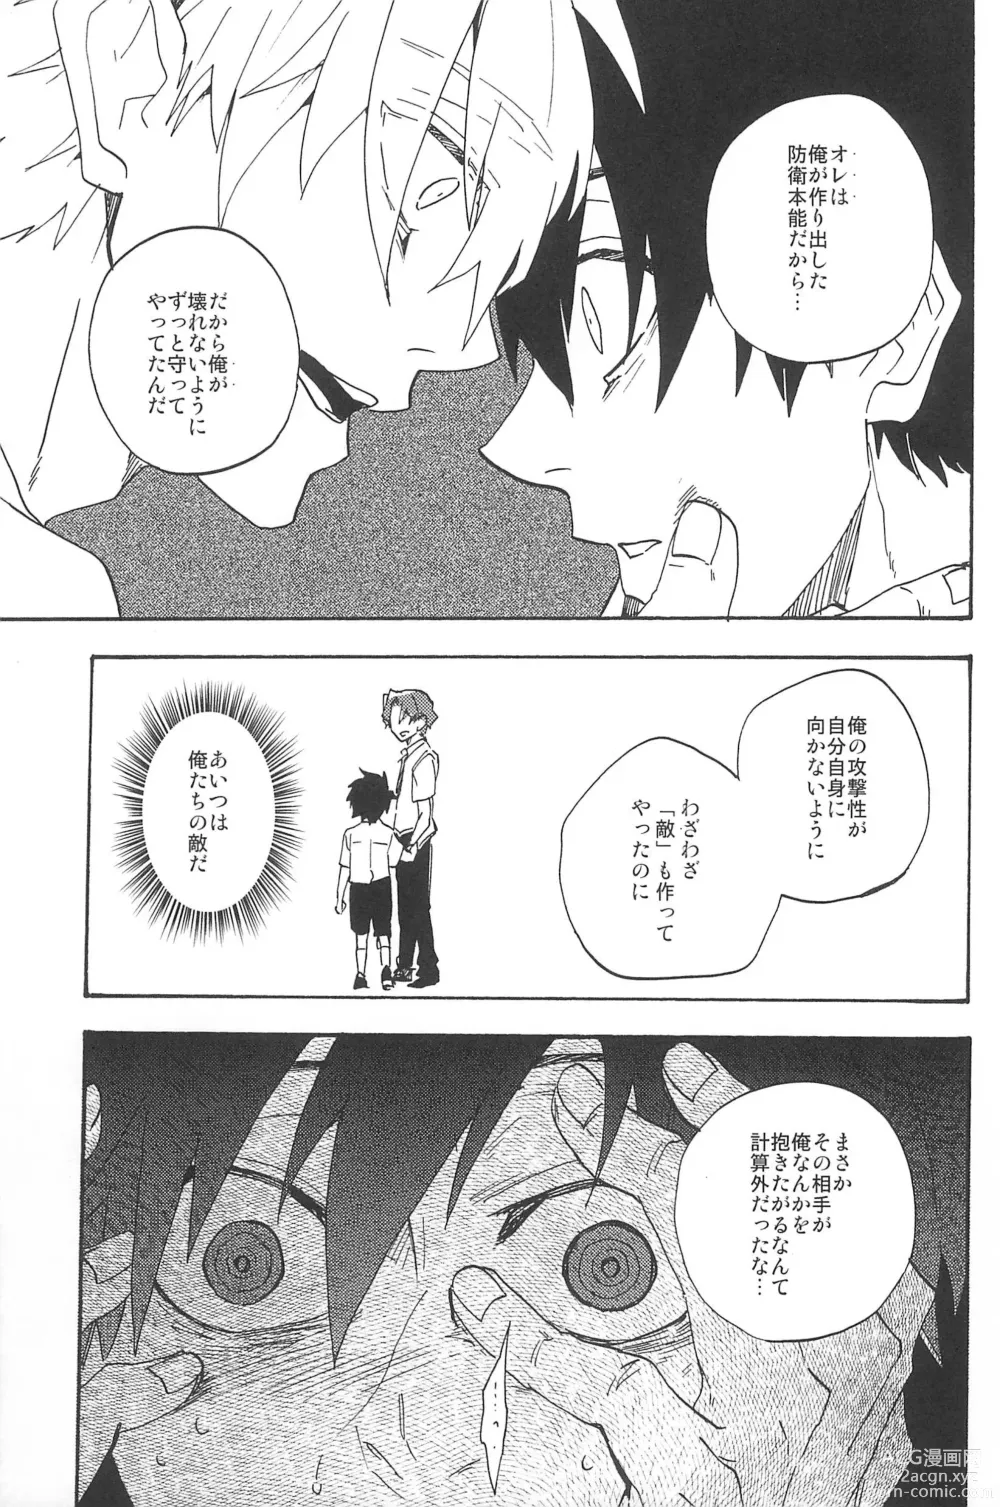 Page 313 of doujinshi RE:BERSERK